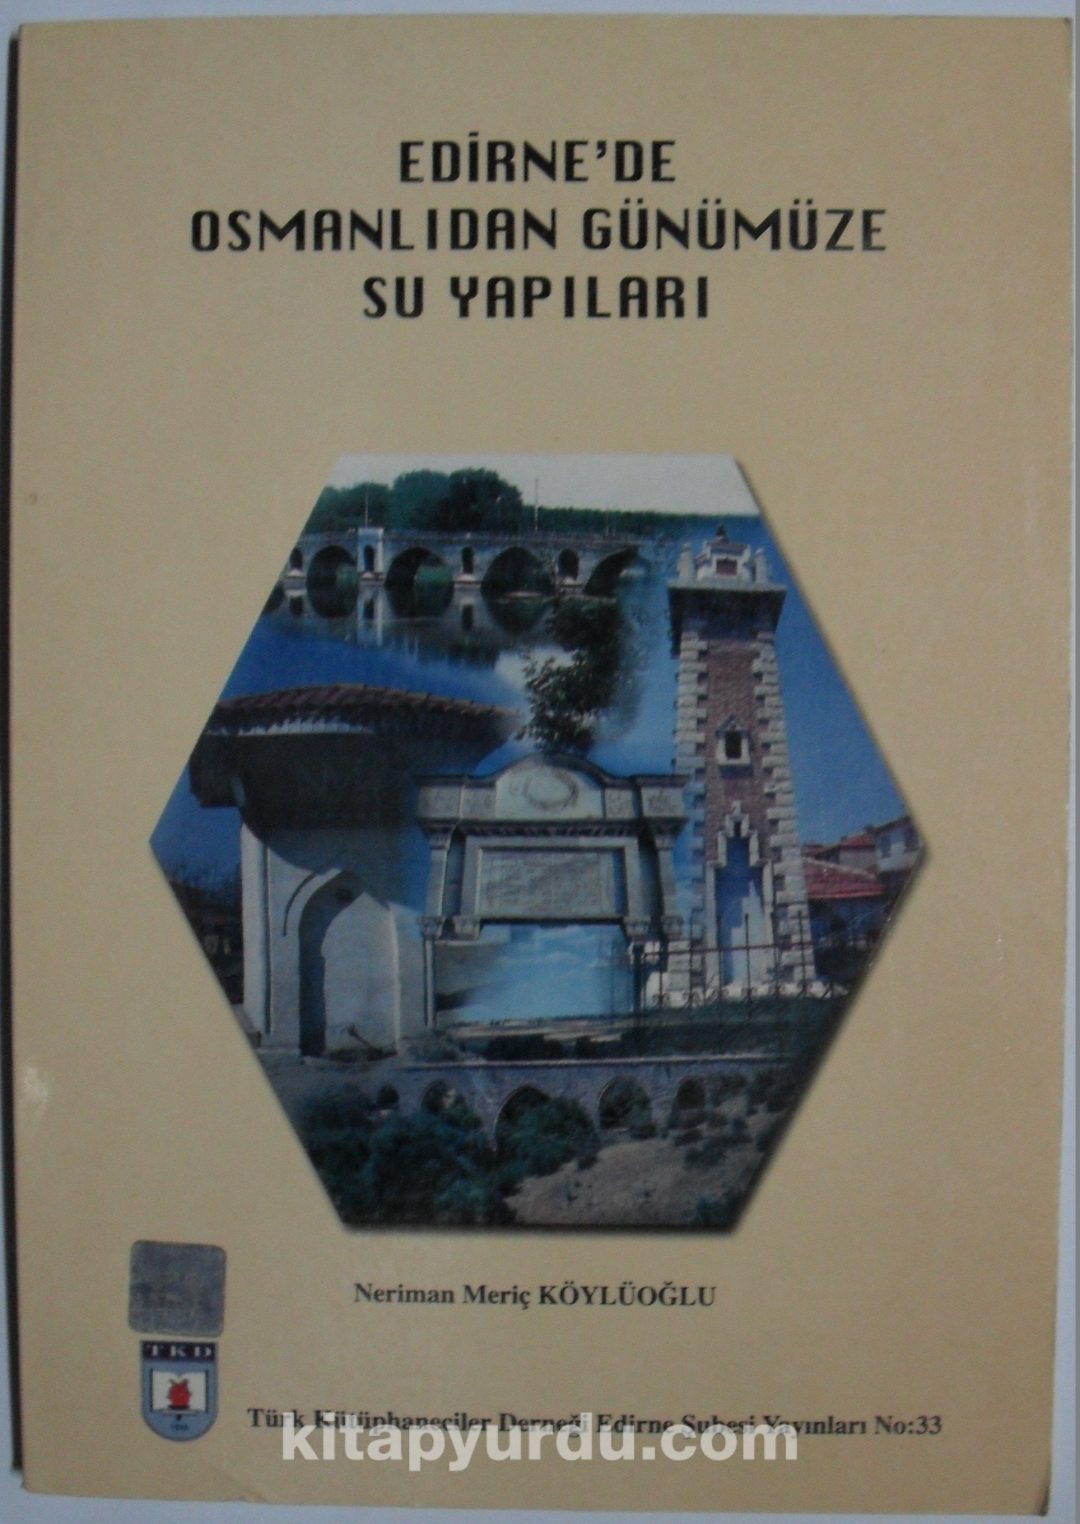 Edirne’de Osmanlıdan Günümüze Su Yapıları (1-C-98)